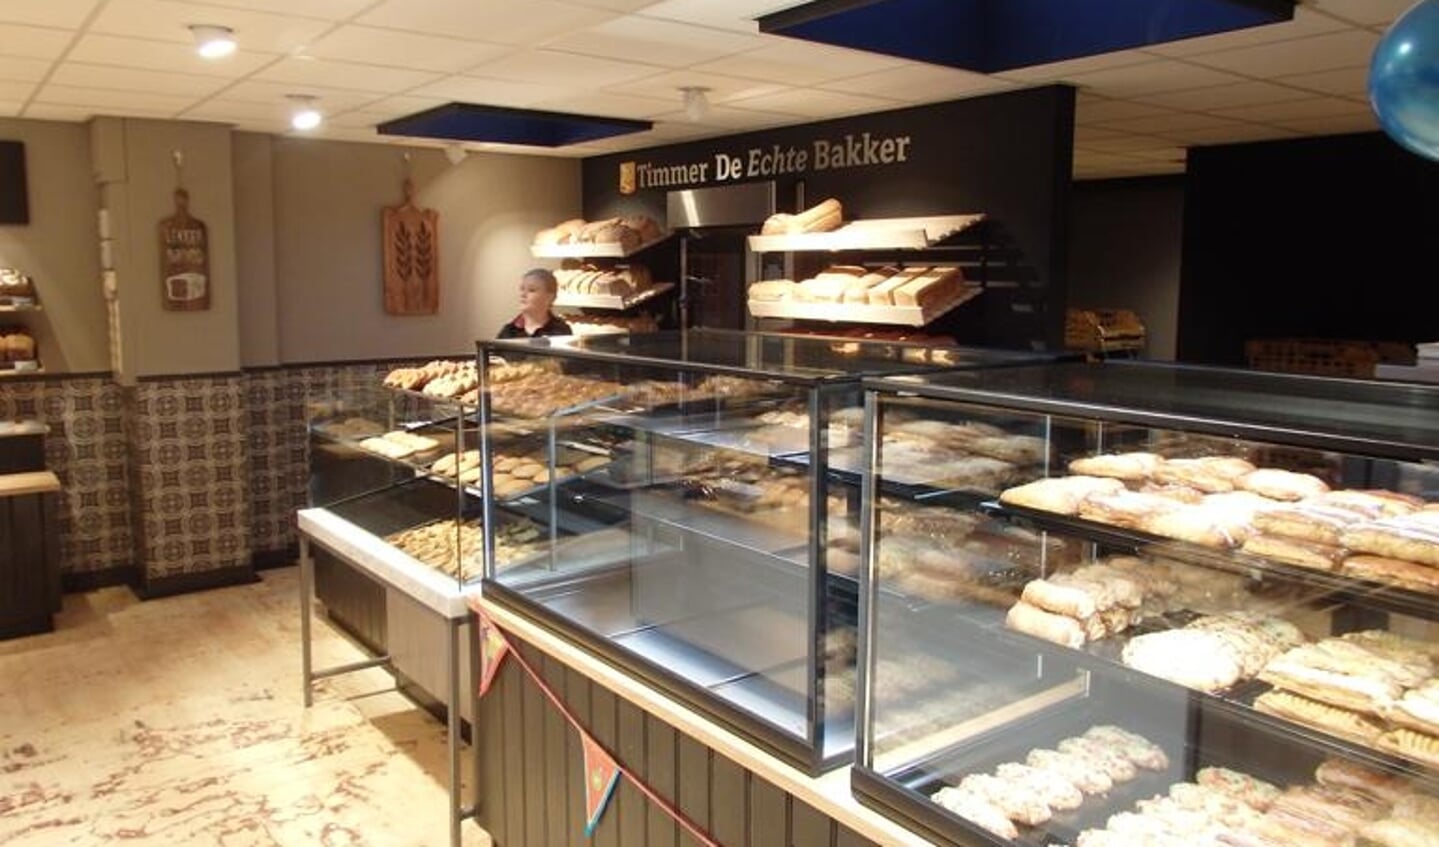 De vestiging heeft hetzelfde assortiment als de andere filialen op Texel. (Foto: Mikel Knippenberg)